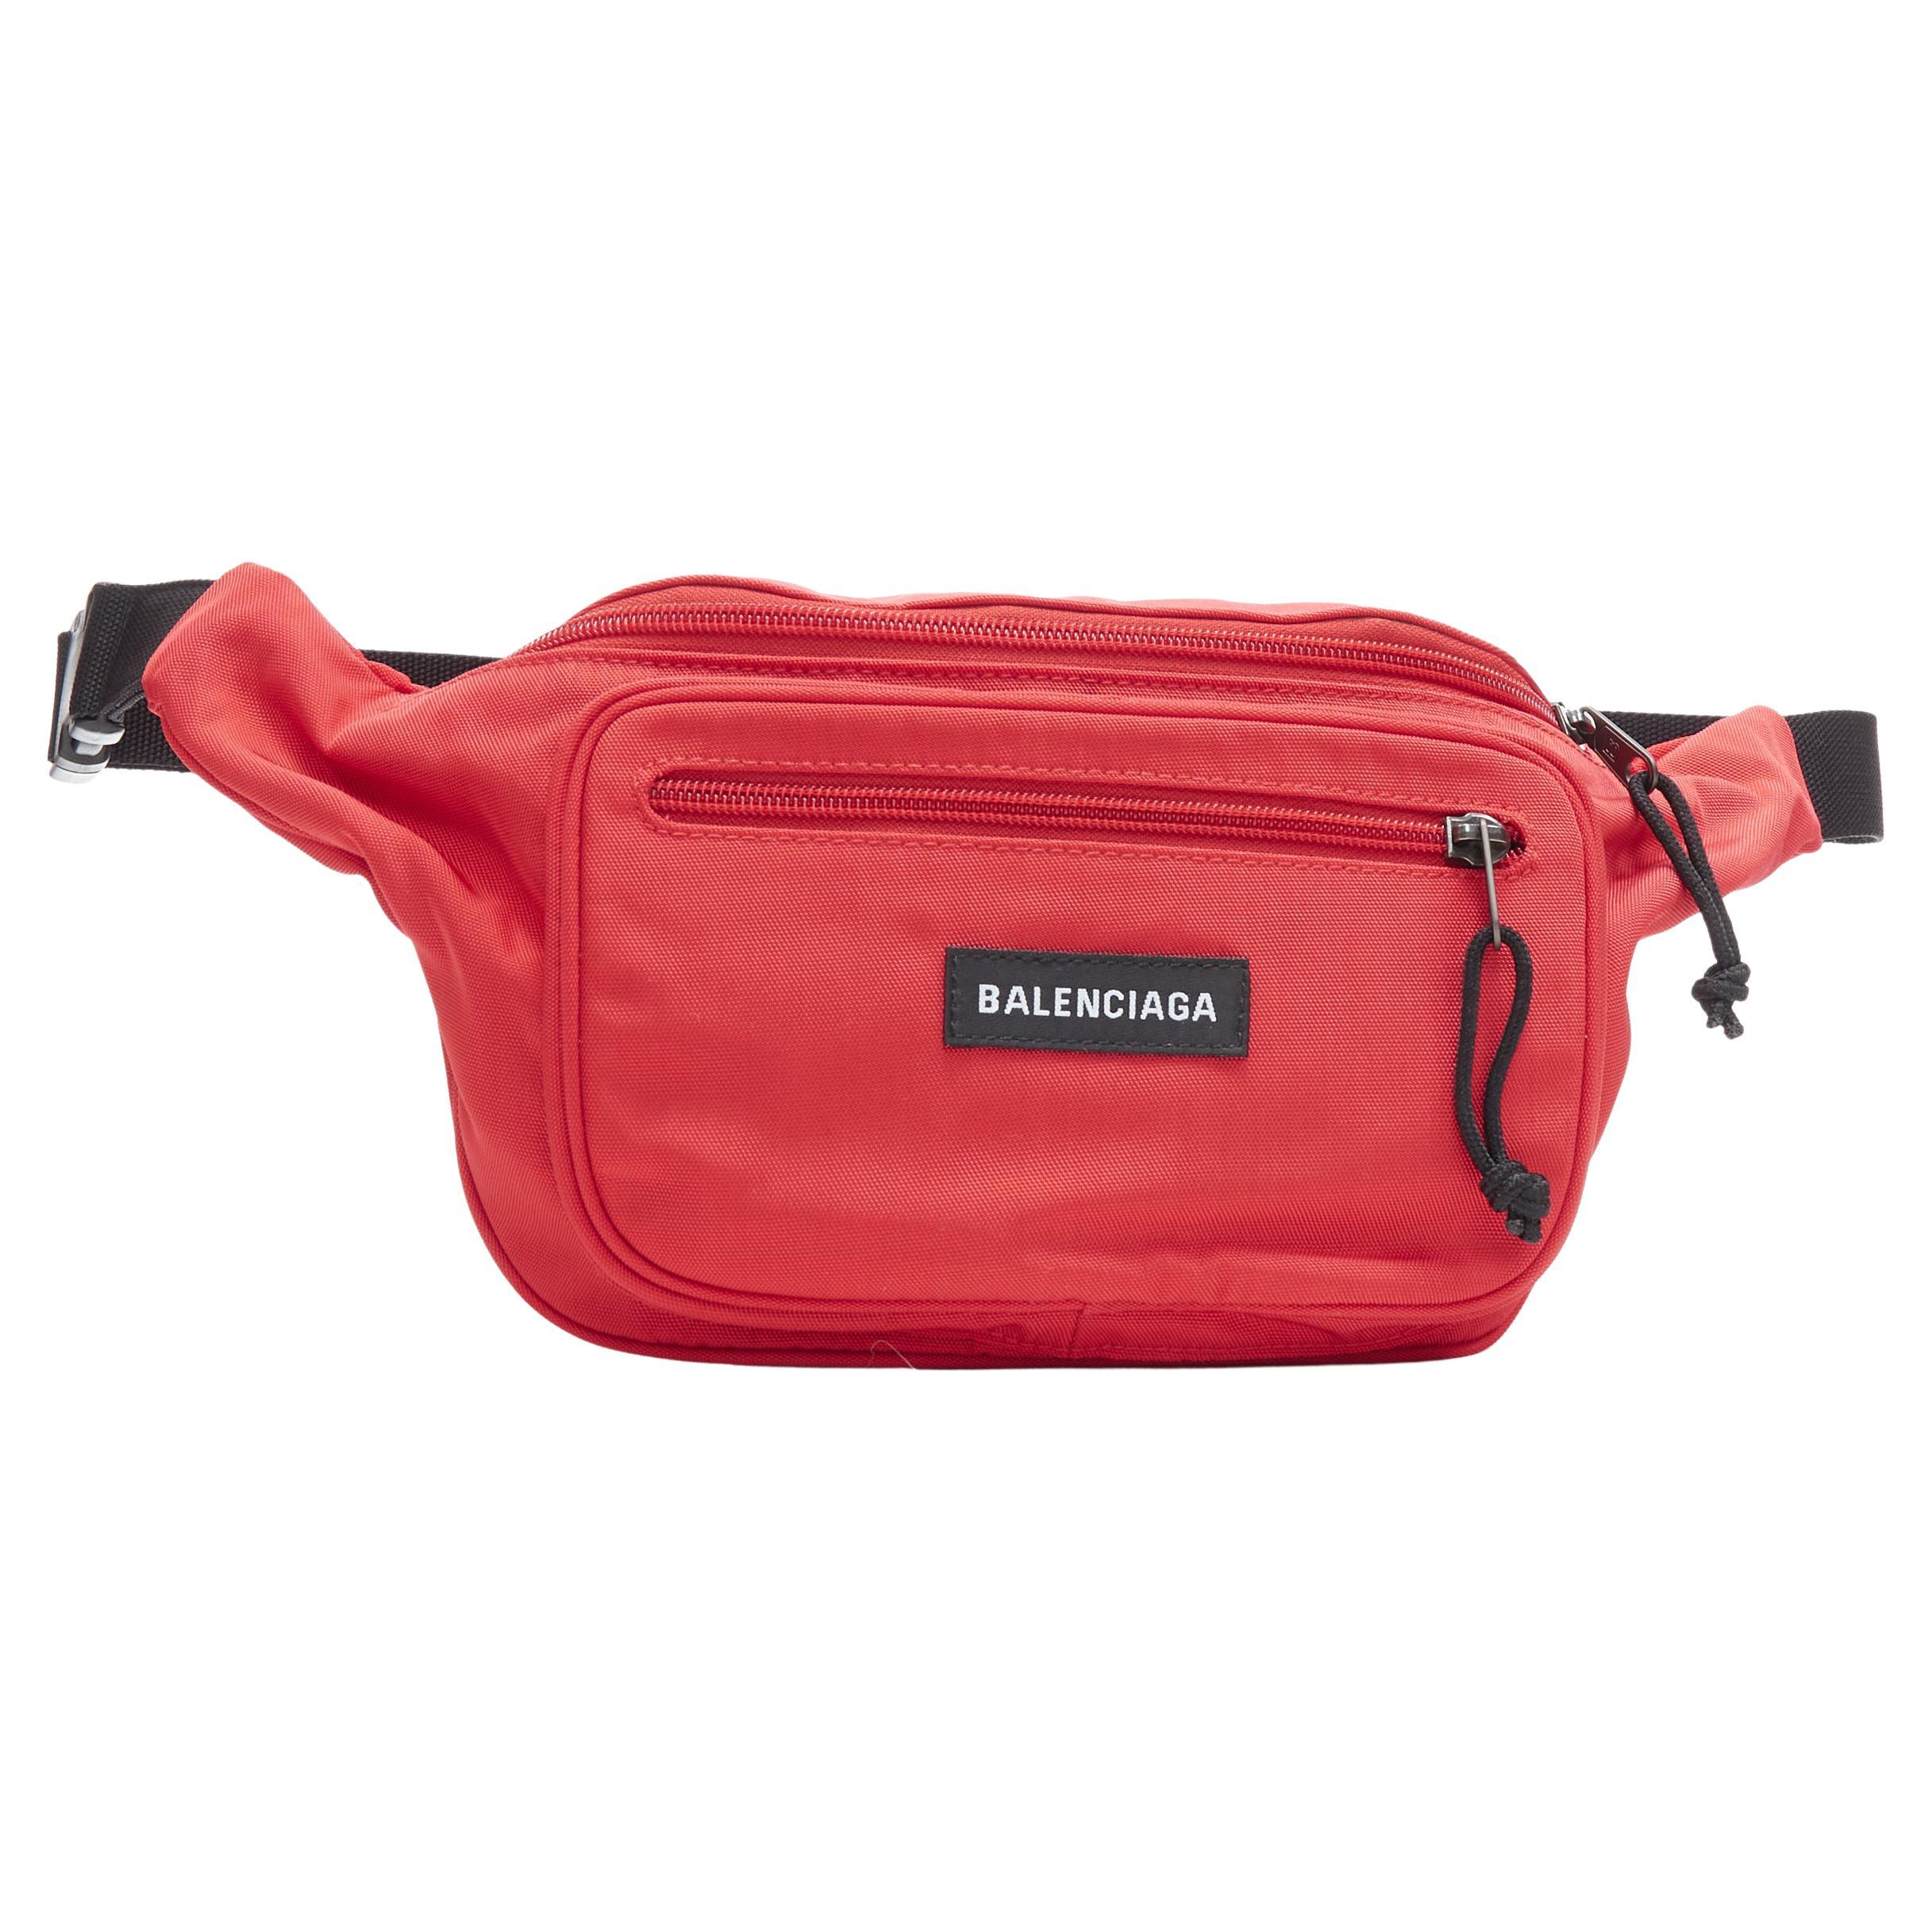 BALENCIAGA DEMNA Rote Logo-Umhängetasche aus Nylon mit zwei Taschen und schwarzer Taille